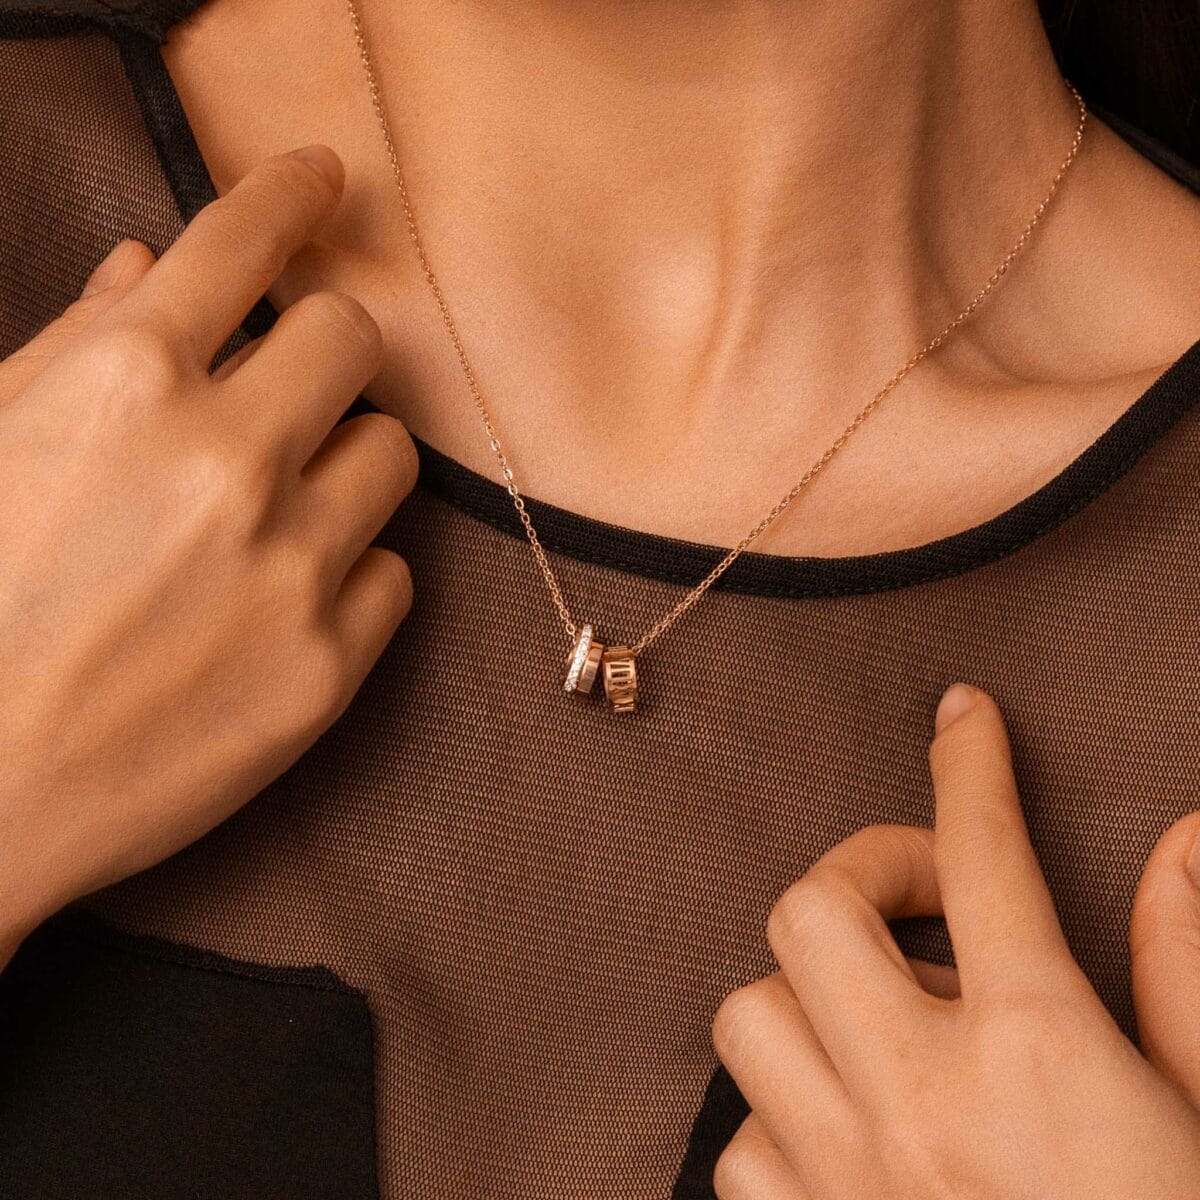 https://m.clubbella.co/product/versailles/ Versailles necklace (4)